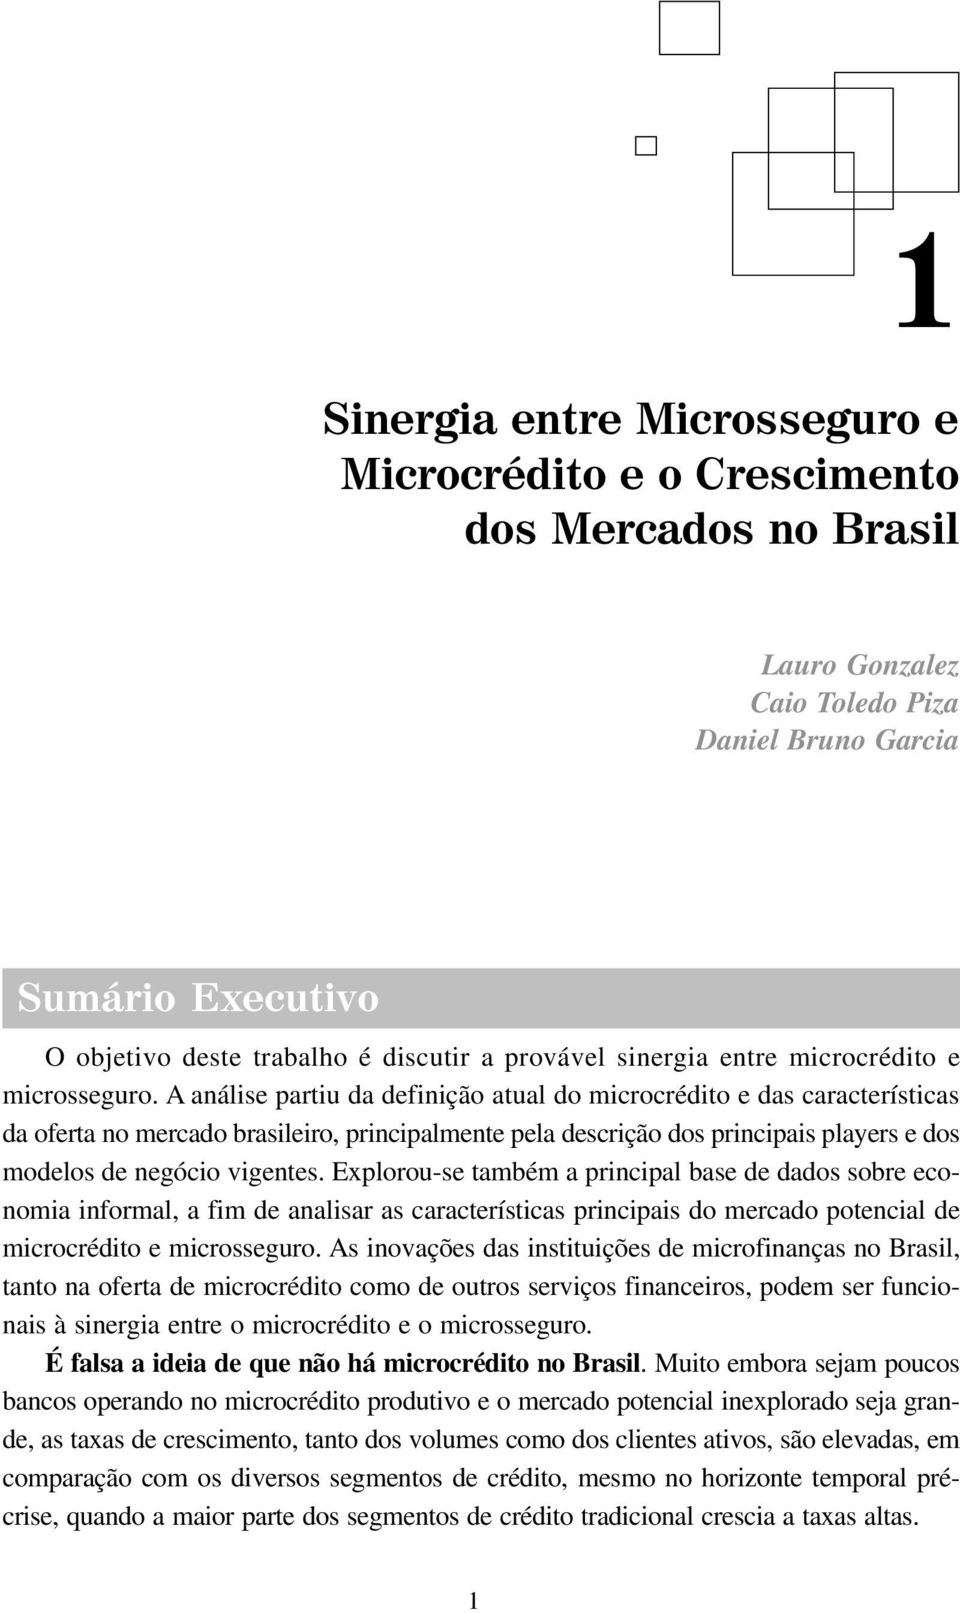 A análise partiu da definição atual do microcrédito e das características da oferta no mercado brasileiro, principalmente pela descrição dos principais players e dos modelos de negócio vigentes.